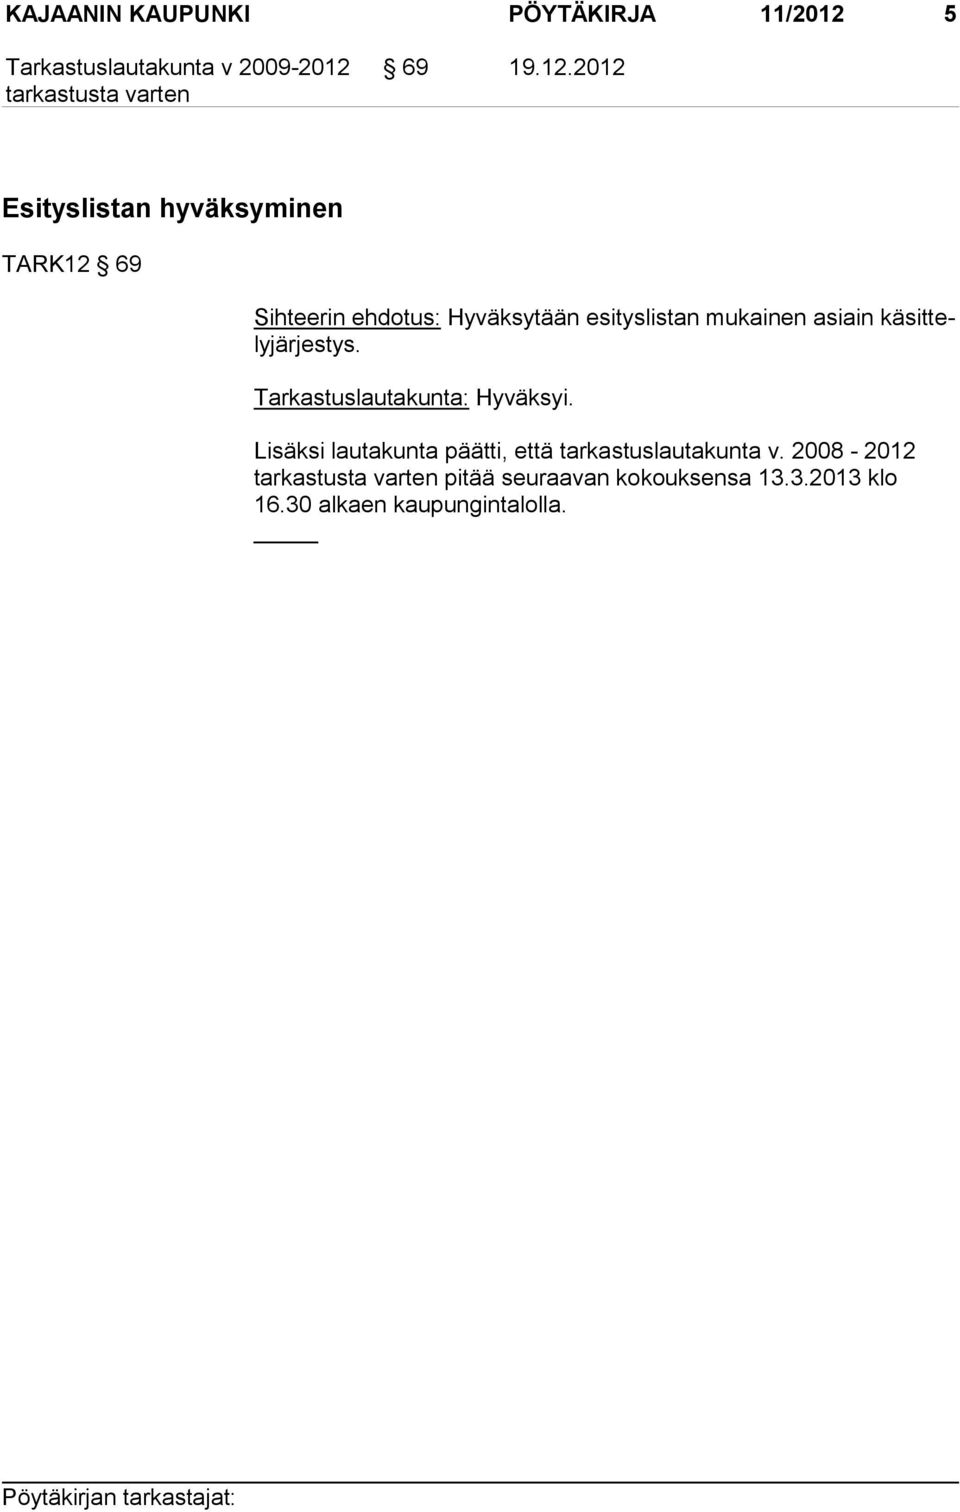 2012 Esityslistan hyväksyminen TARK12 69 Sihteerin ehdotus: Hyväksytään esityslistan